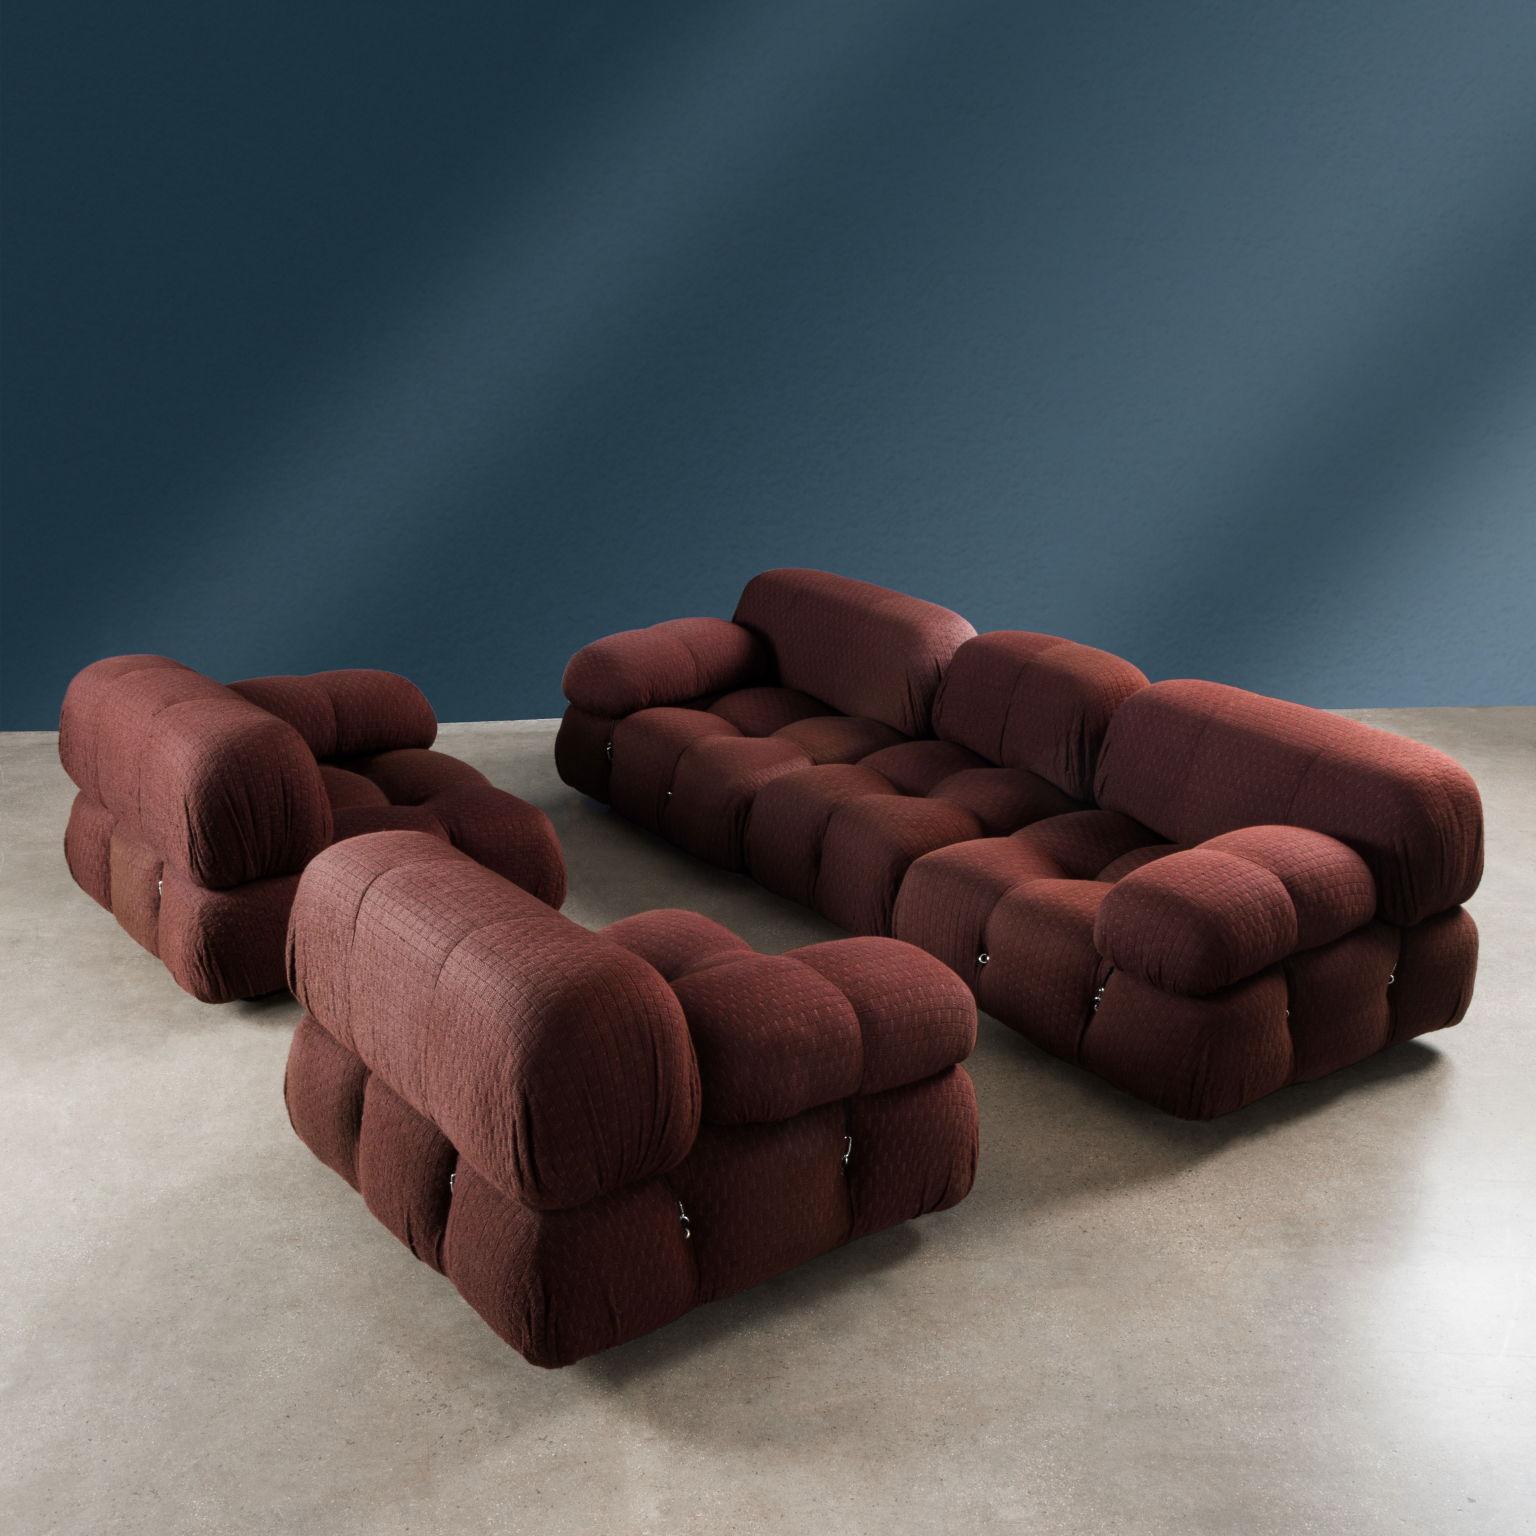 Das ikonische modulare Sofa wurde von Mario Bellini entworfen und wird seit 1970 von C&B hergestellt.
Gepolstert mit Polyurethanschaum, bezogen mit Originalstoff in ausgezeichnetem Zustand, 70er-Jahre-Ausgabe der Marke B&B.
Set bestehend aus fünf